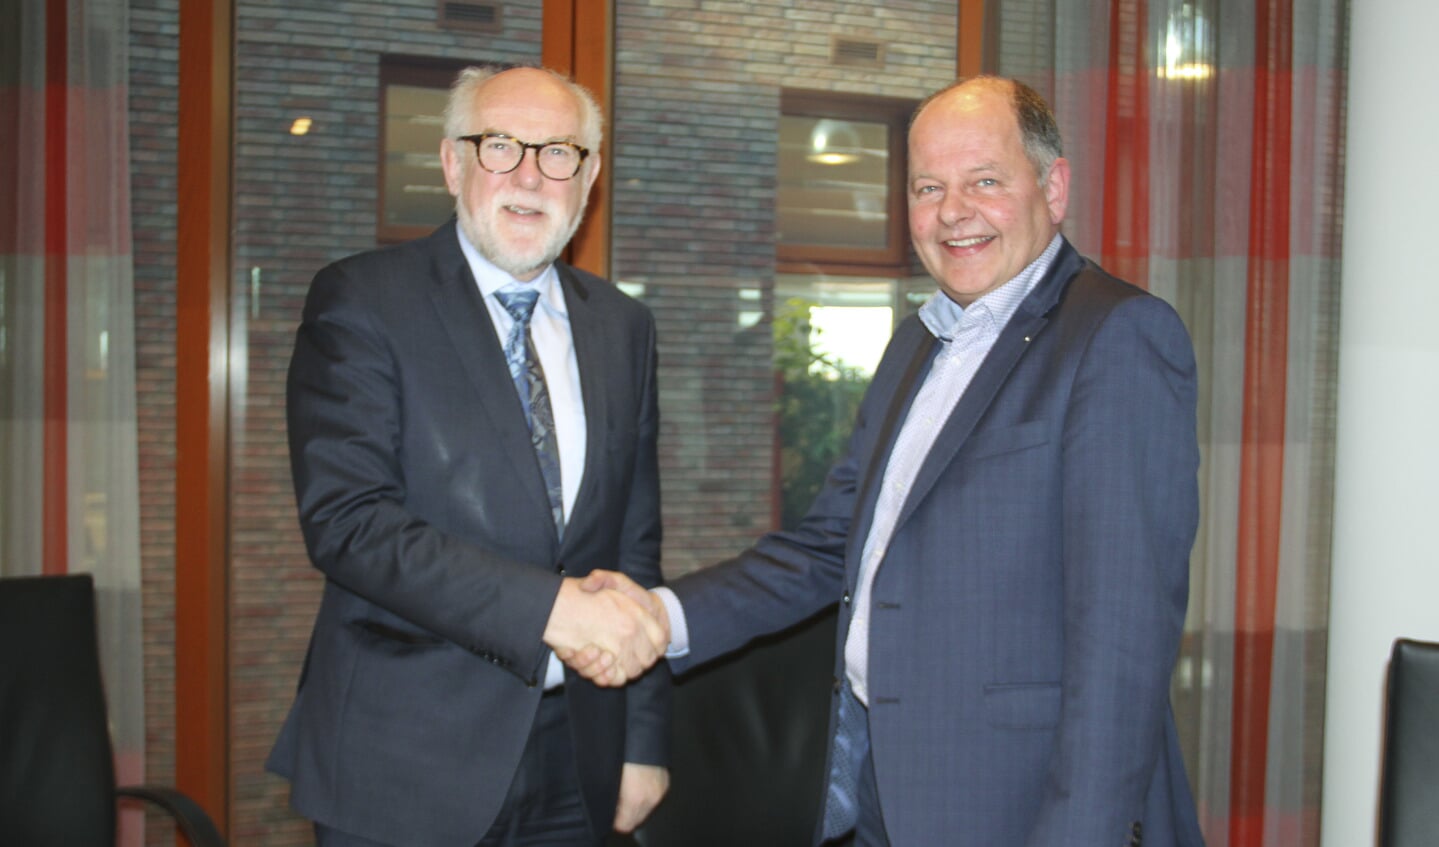 Burgemeester Karel van Soest en de heer Hafmans, directeur van VTS